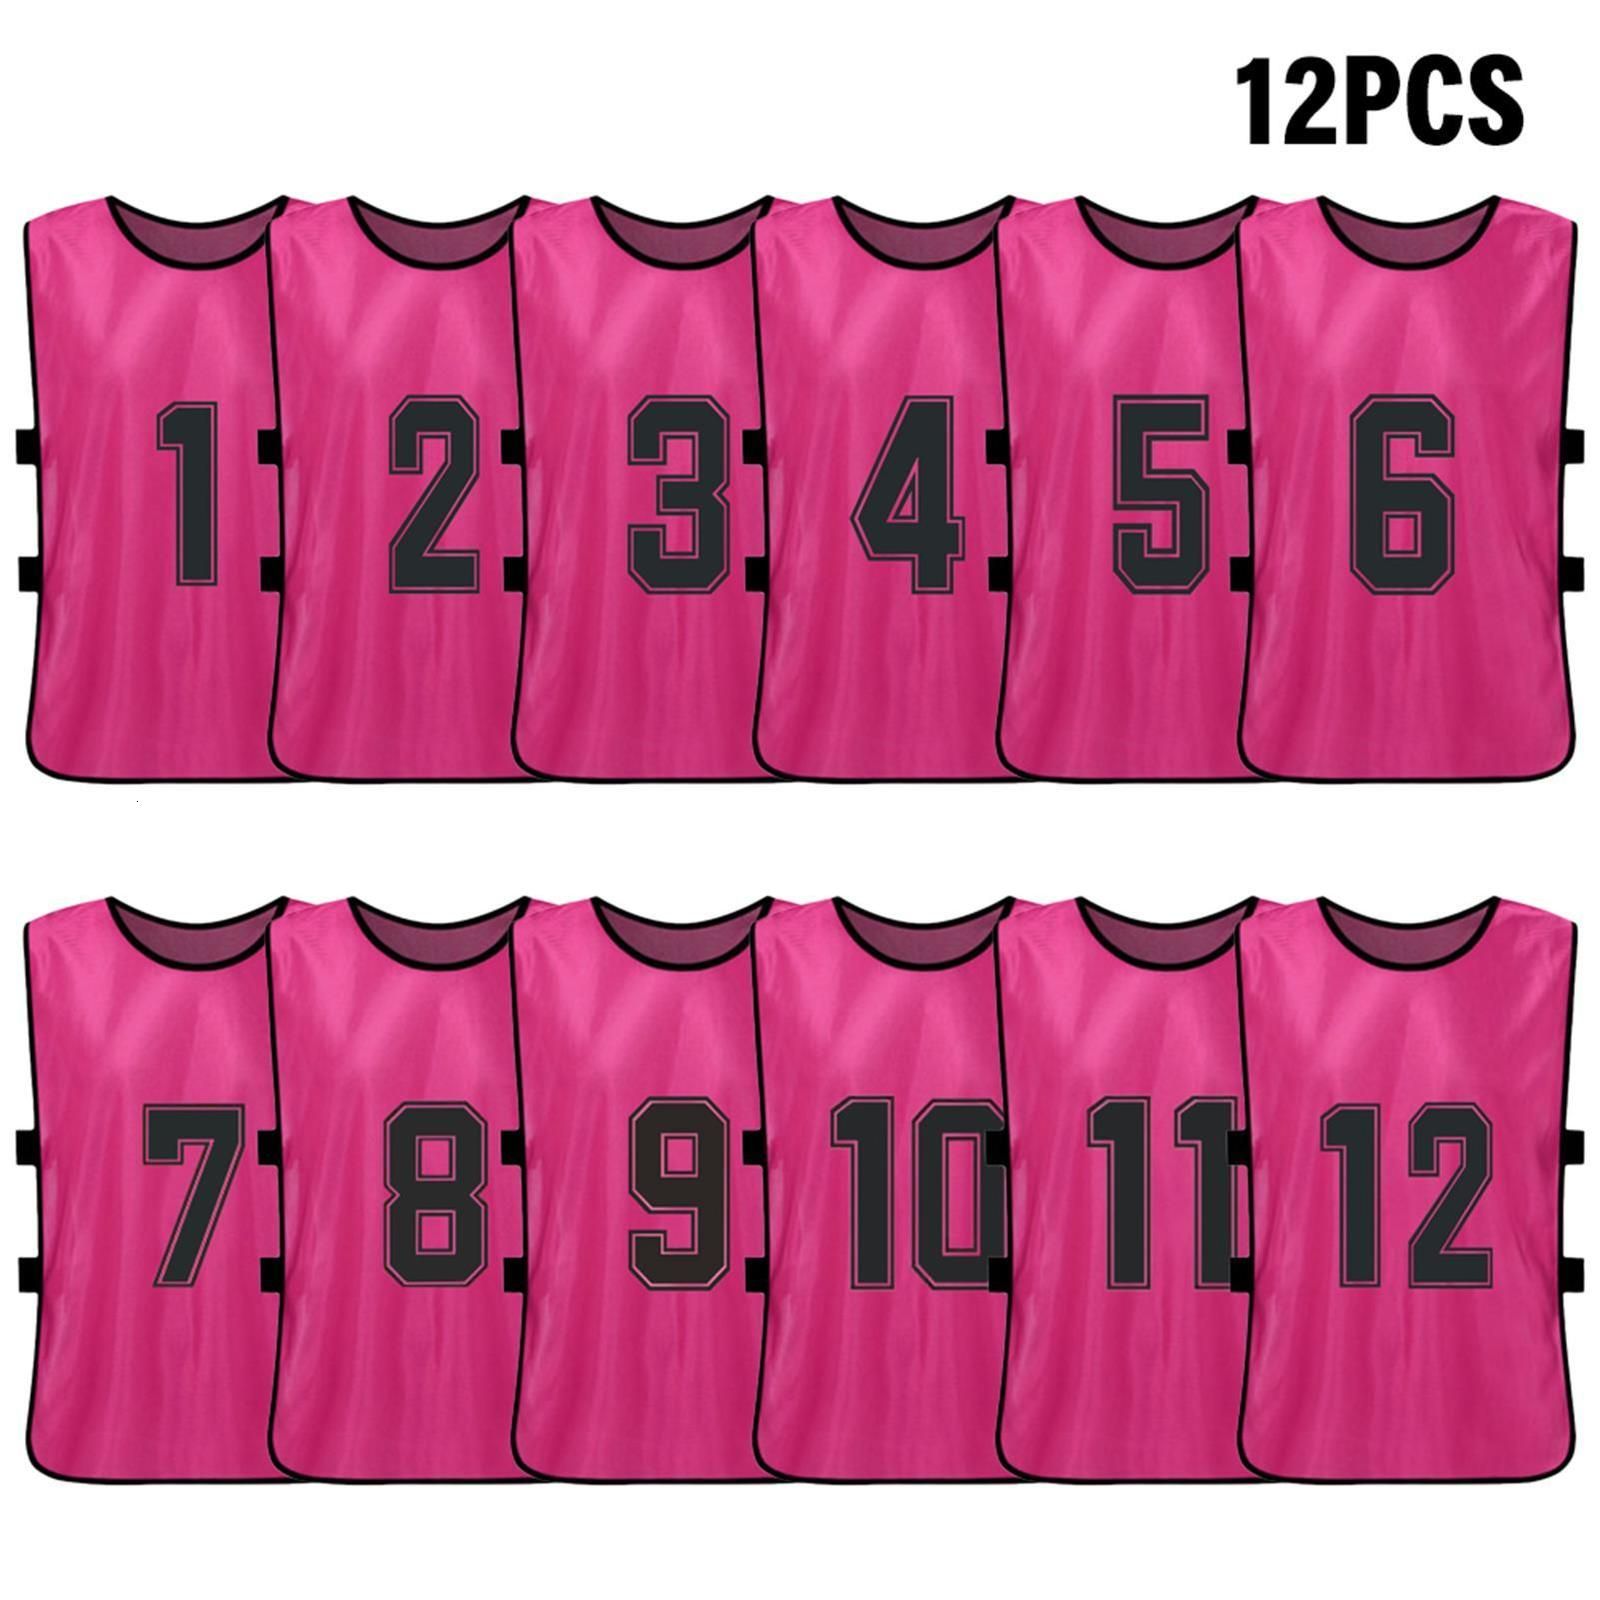 Pink 12pcs